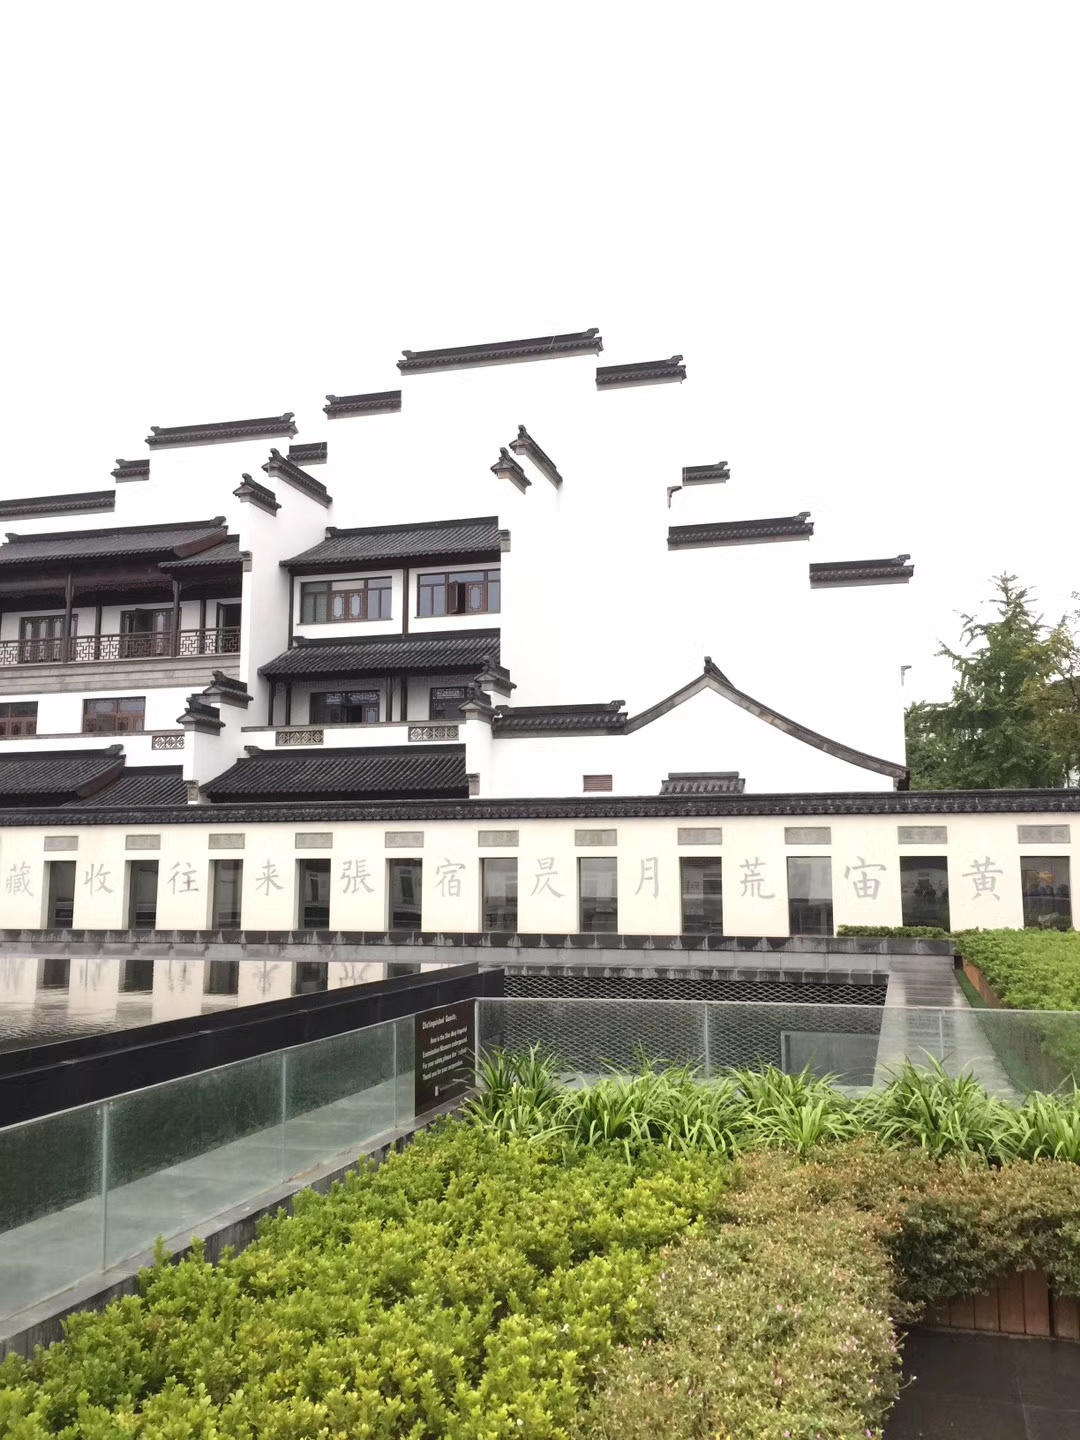 中国唯一的科举博物馆——南京科举博物馆